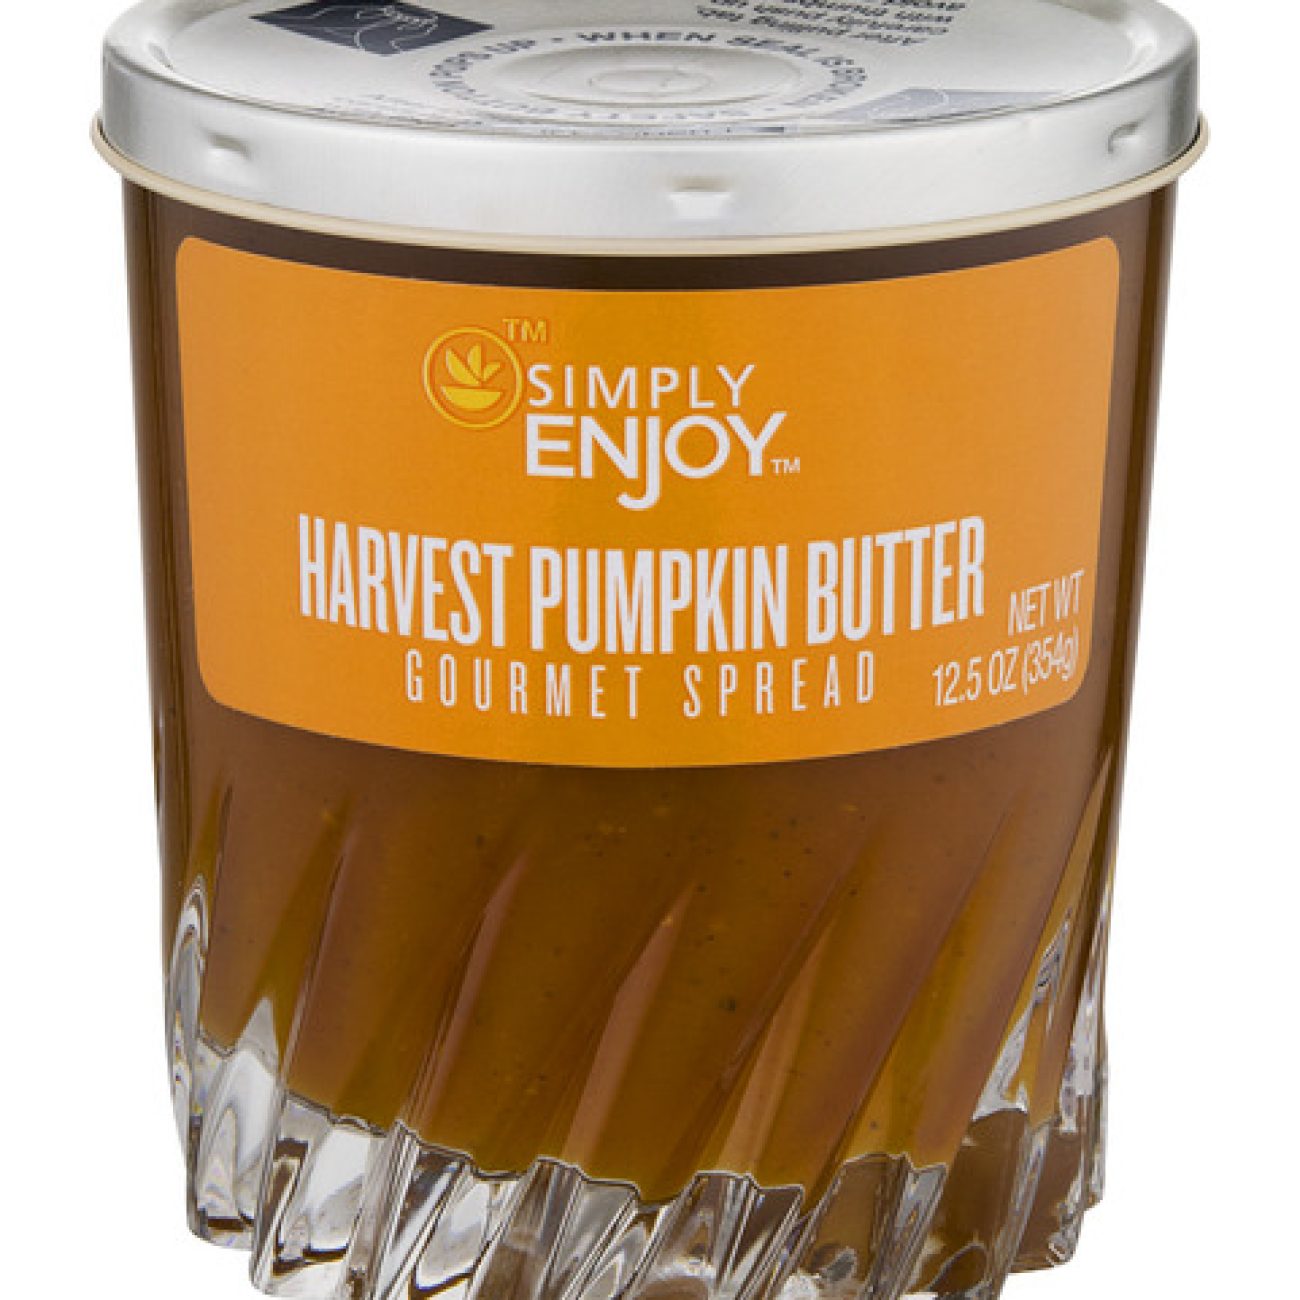 Harvest Pumpkin Butter